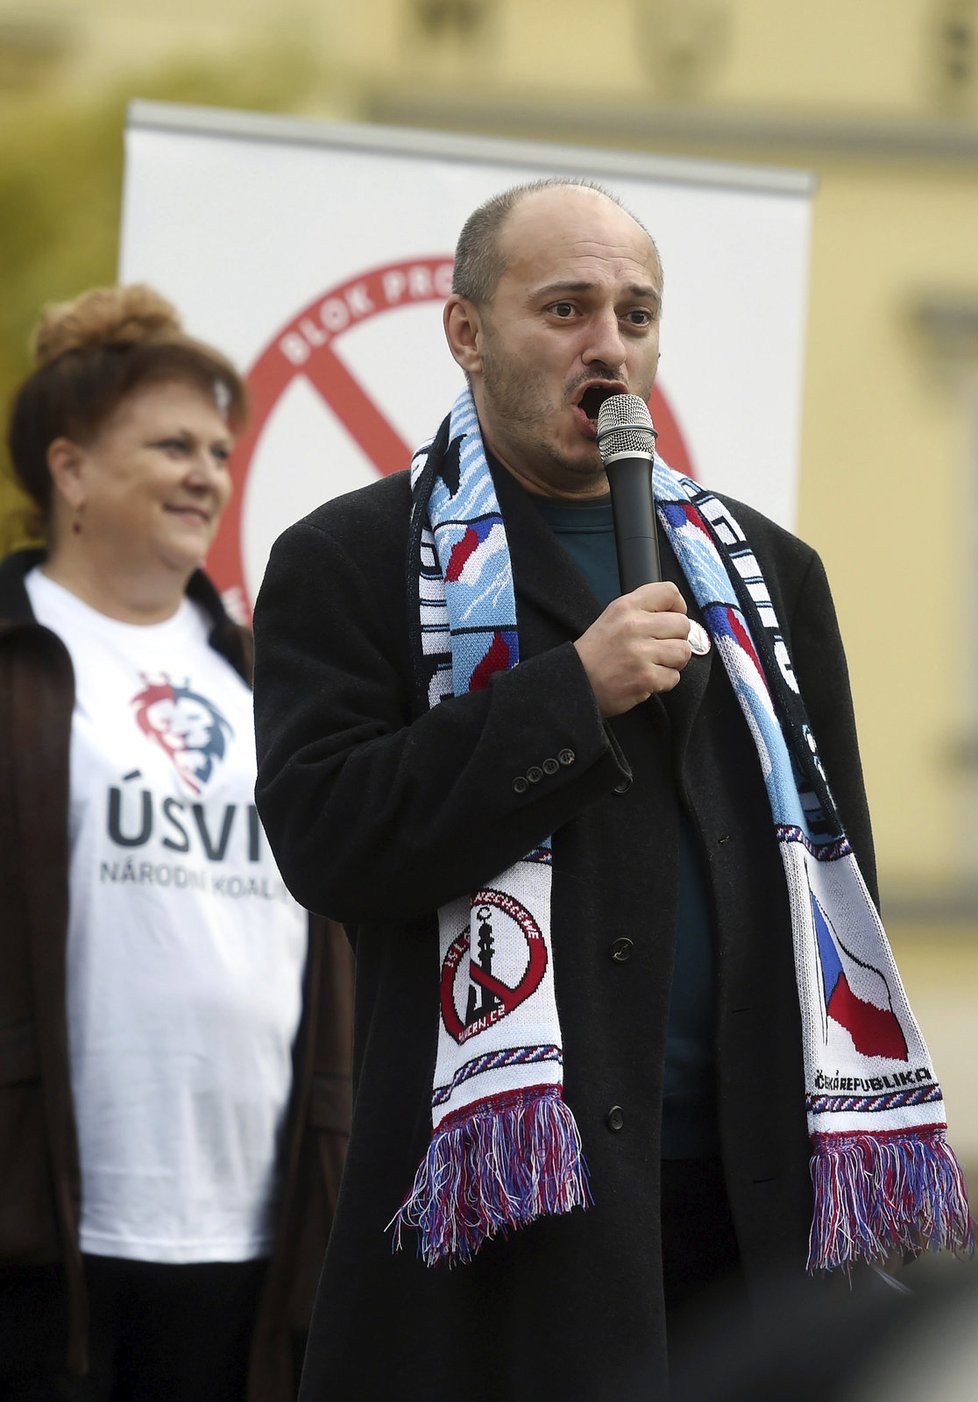 Protestní shromáždění proti nelegální imigraci 28. října na Masarykově náměstí v Ostravě. Zleva jsou poslankyně za hnutí Úsvit - Národní koalice Olga Havlová a aktivista Martin Konvička.